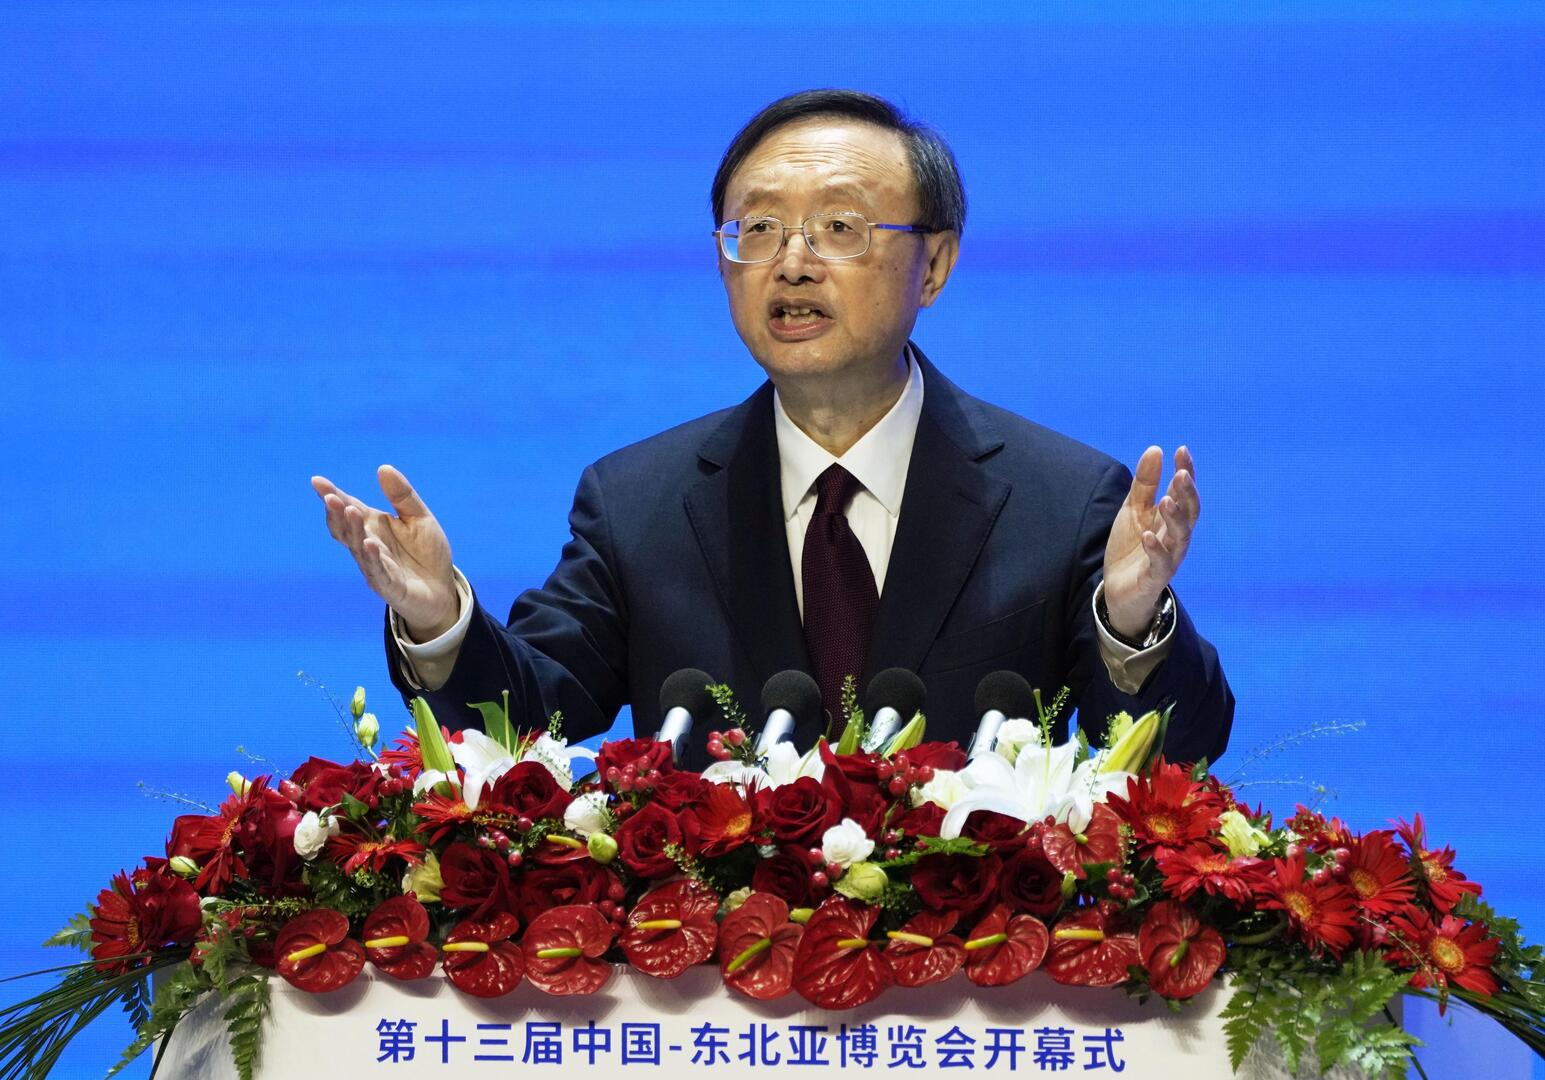 رئيس مكتب الشؤون الخارجية في اللجنة المركزية للحزب الشيوعي الصيني، العضو في المكتب السياسي للحزب يانغ جيتشي